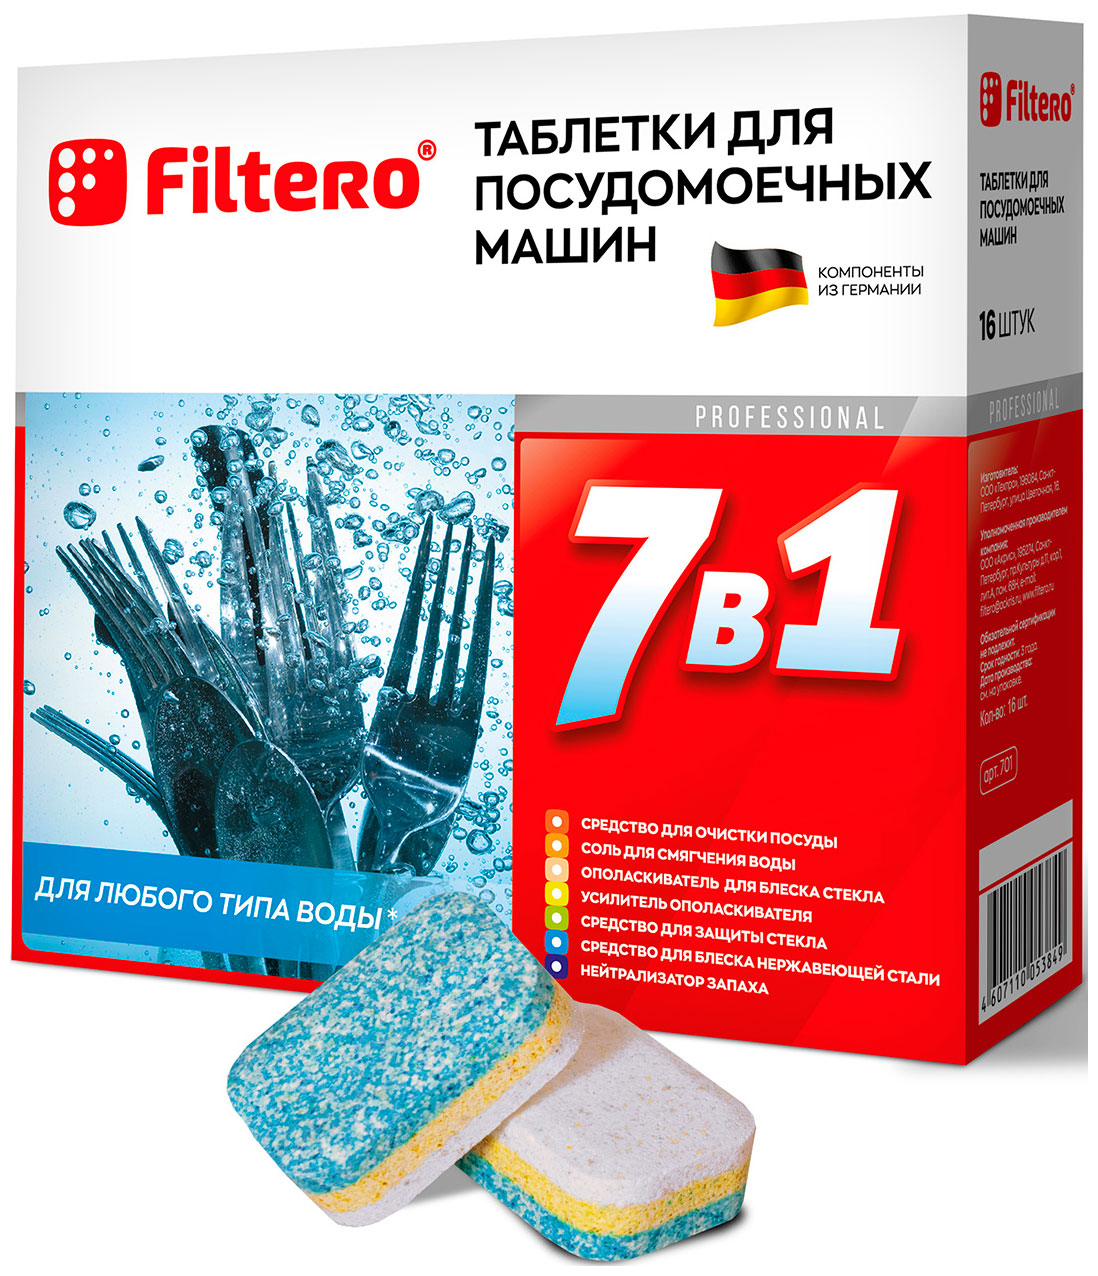 Таблетки для посудомоечных машин Filtero Filtero 7 в 1 таблетки для посудомоечной машины таблетки для посудомоечных машин filtero filtero 7 в 1 таблетки для посудомоечной машины